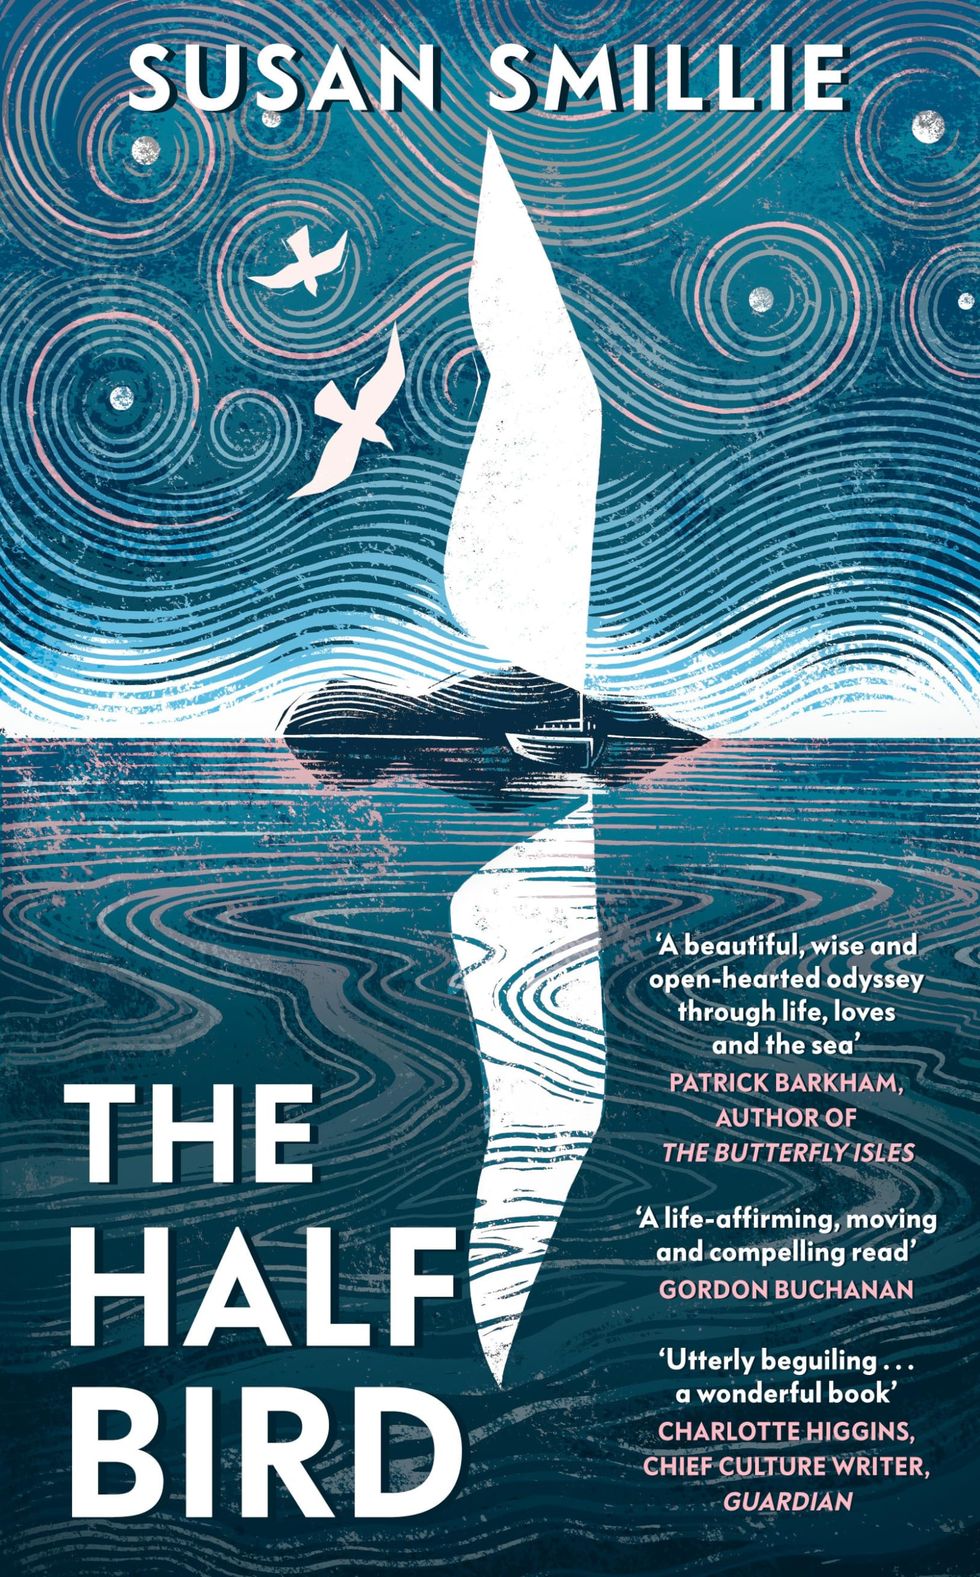 The Half Bird by Susan Smillie